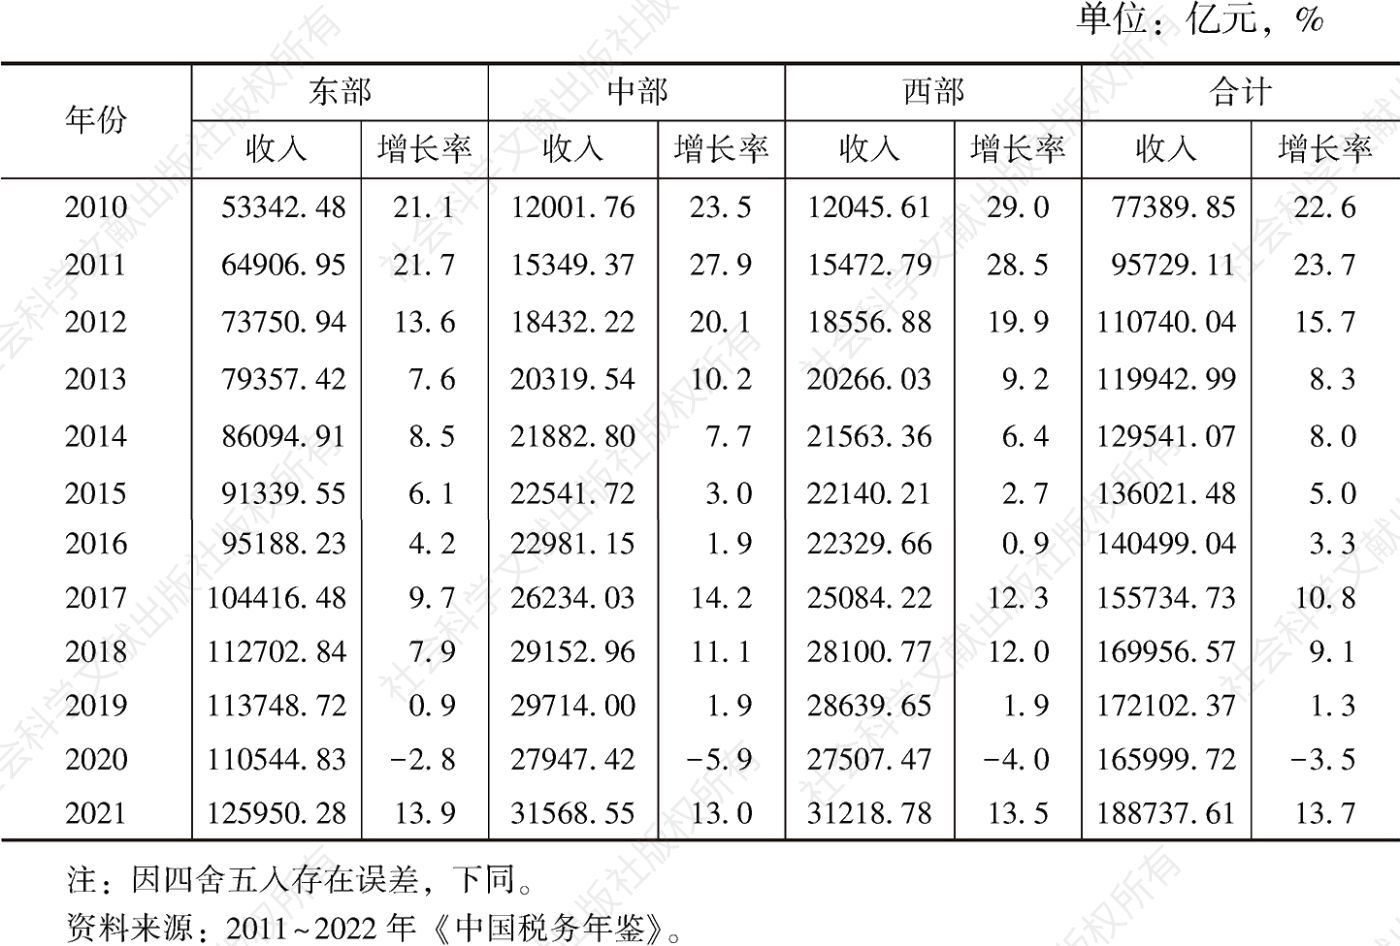 表1 2010～2021年中国区域税收收入状况